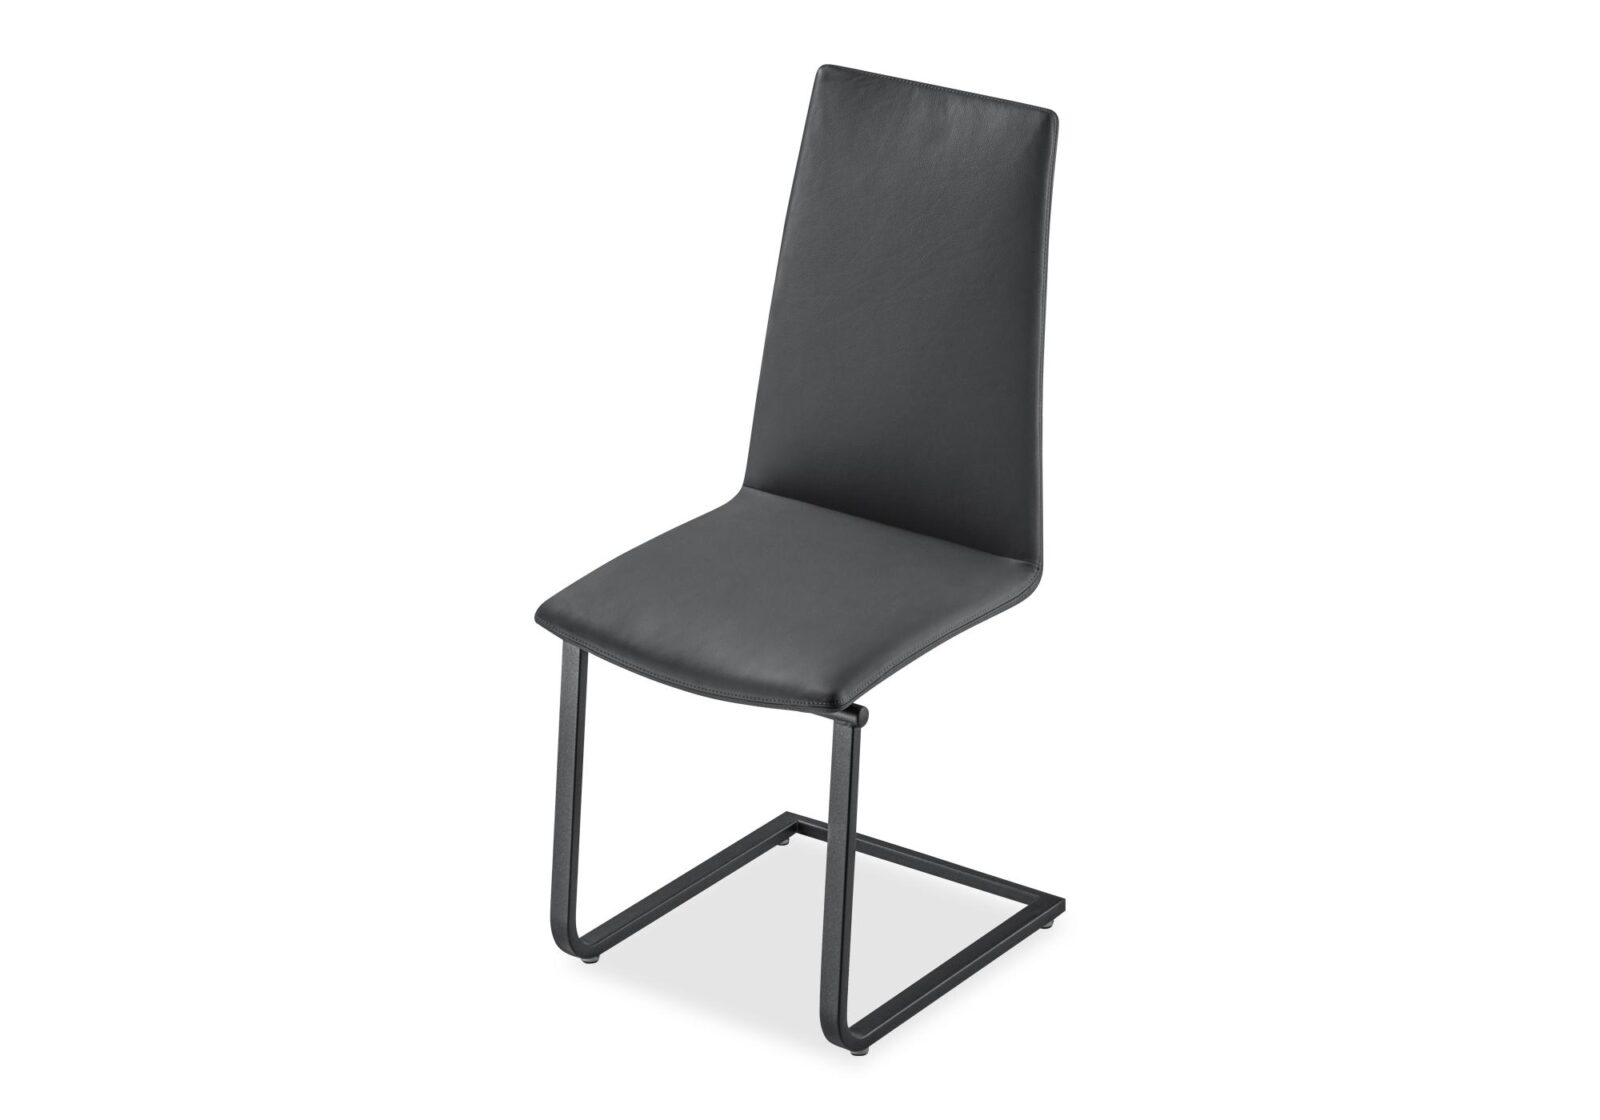 Freischwinger Stuhl Astra. Bezug: Leder. Farbe: Schwarz. Erhältlich bei Möbel Gallati.